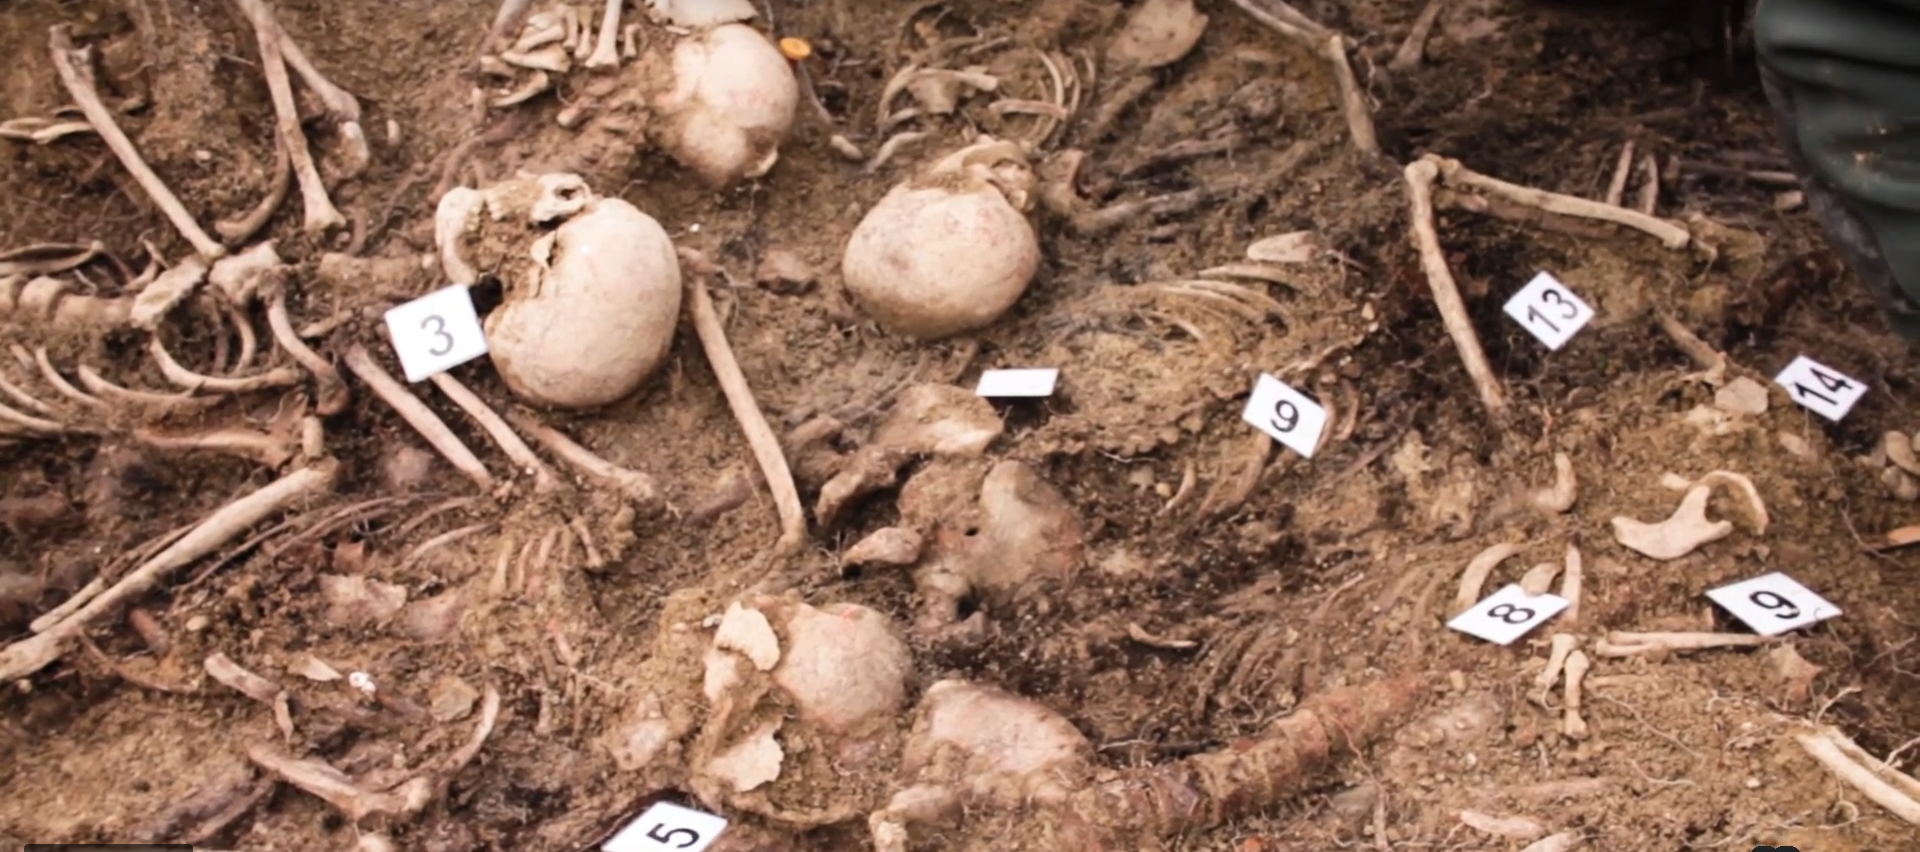 Imagen de los restos hallados en la fosa de Olave. Gobierno de Navarra